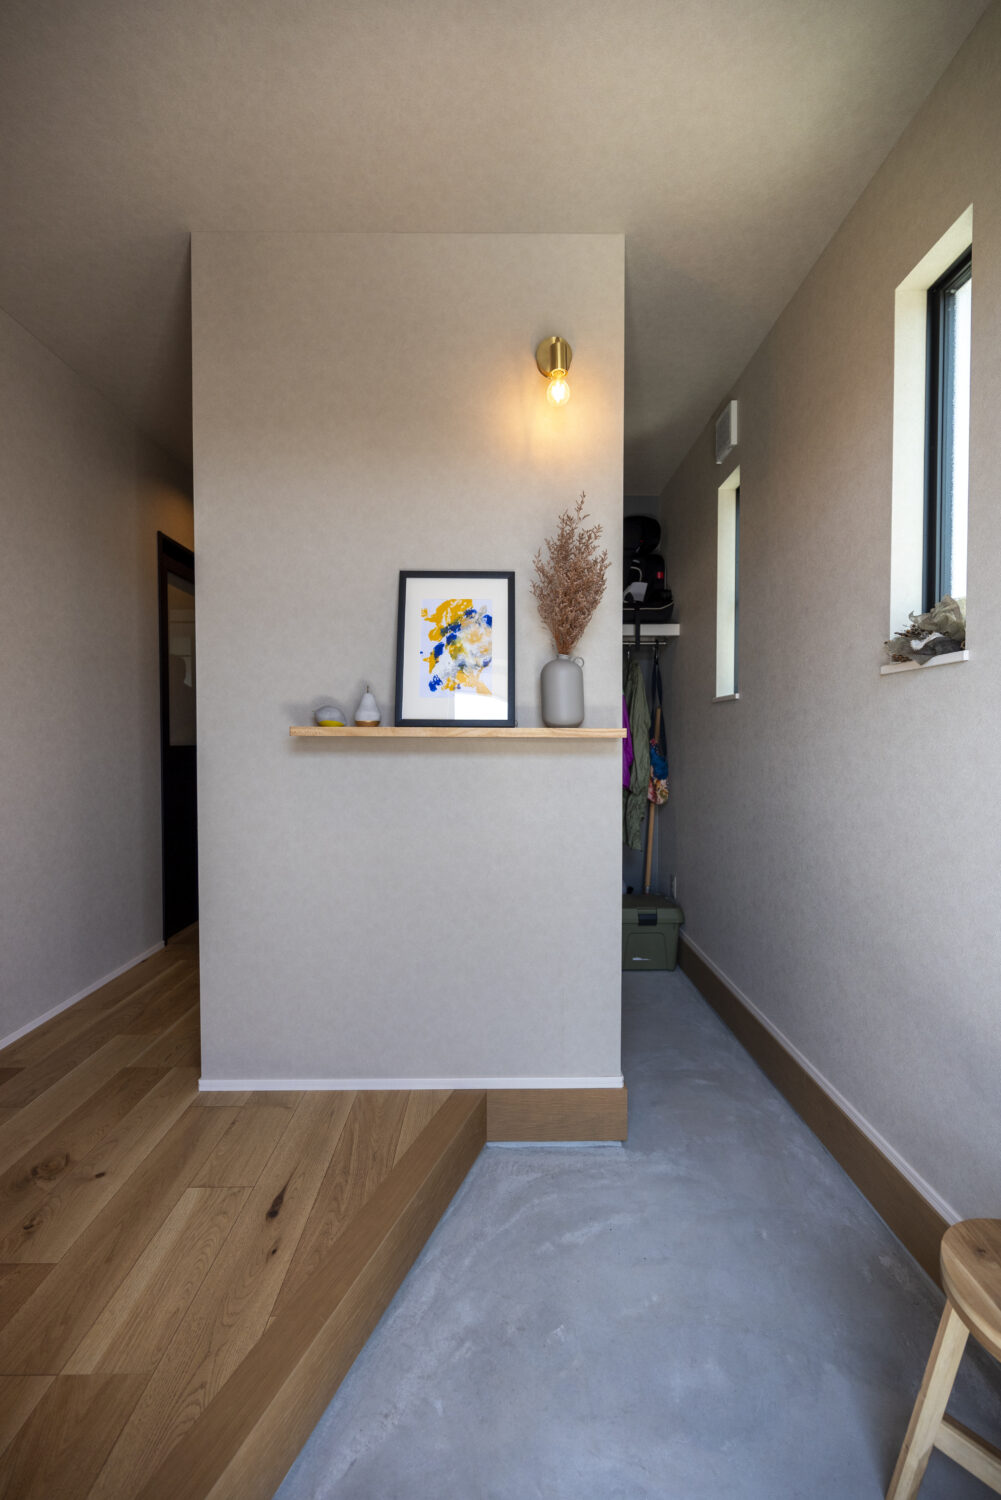 広島県福山市
アイデザインホーム
注文住宅
玄関を開けると正面に土間収納。
手前の壁にアイキャッチとなるインテリアを置くことで、扉はなくとも奥に目線が行くことを緩く遮ります